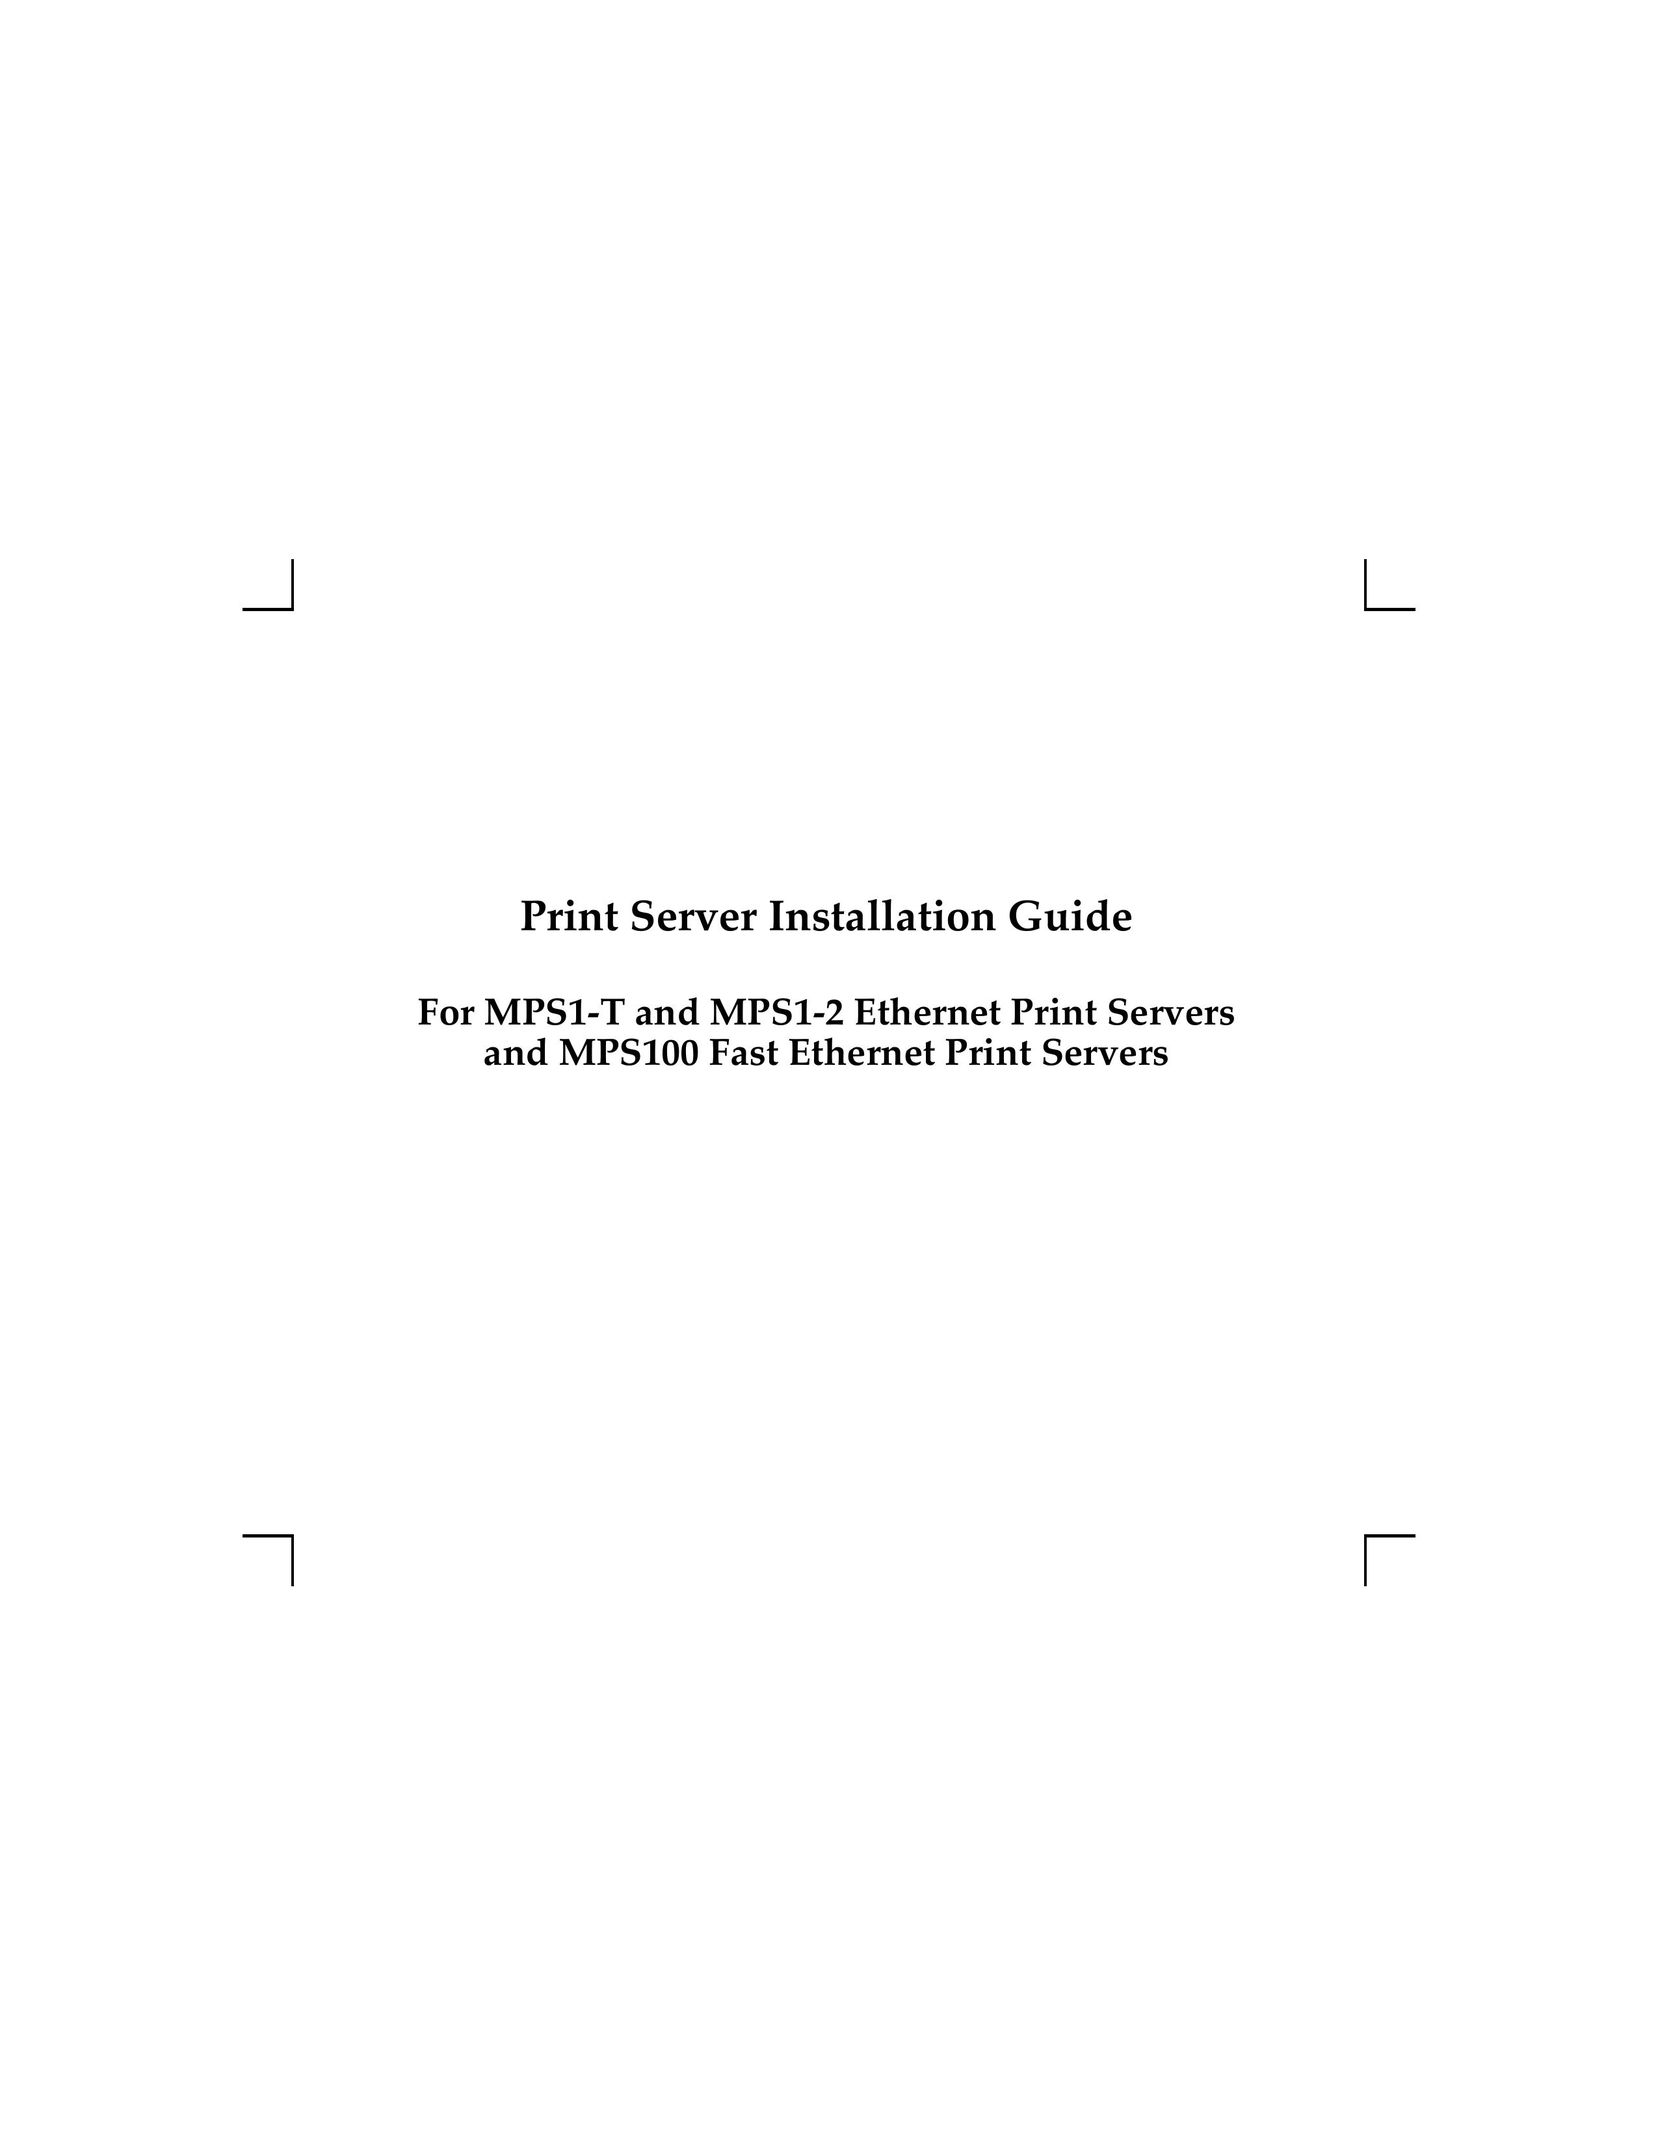 Lantronix MPS1-2 Printer User Manual